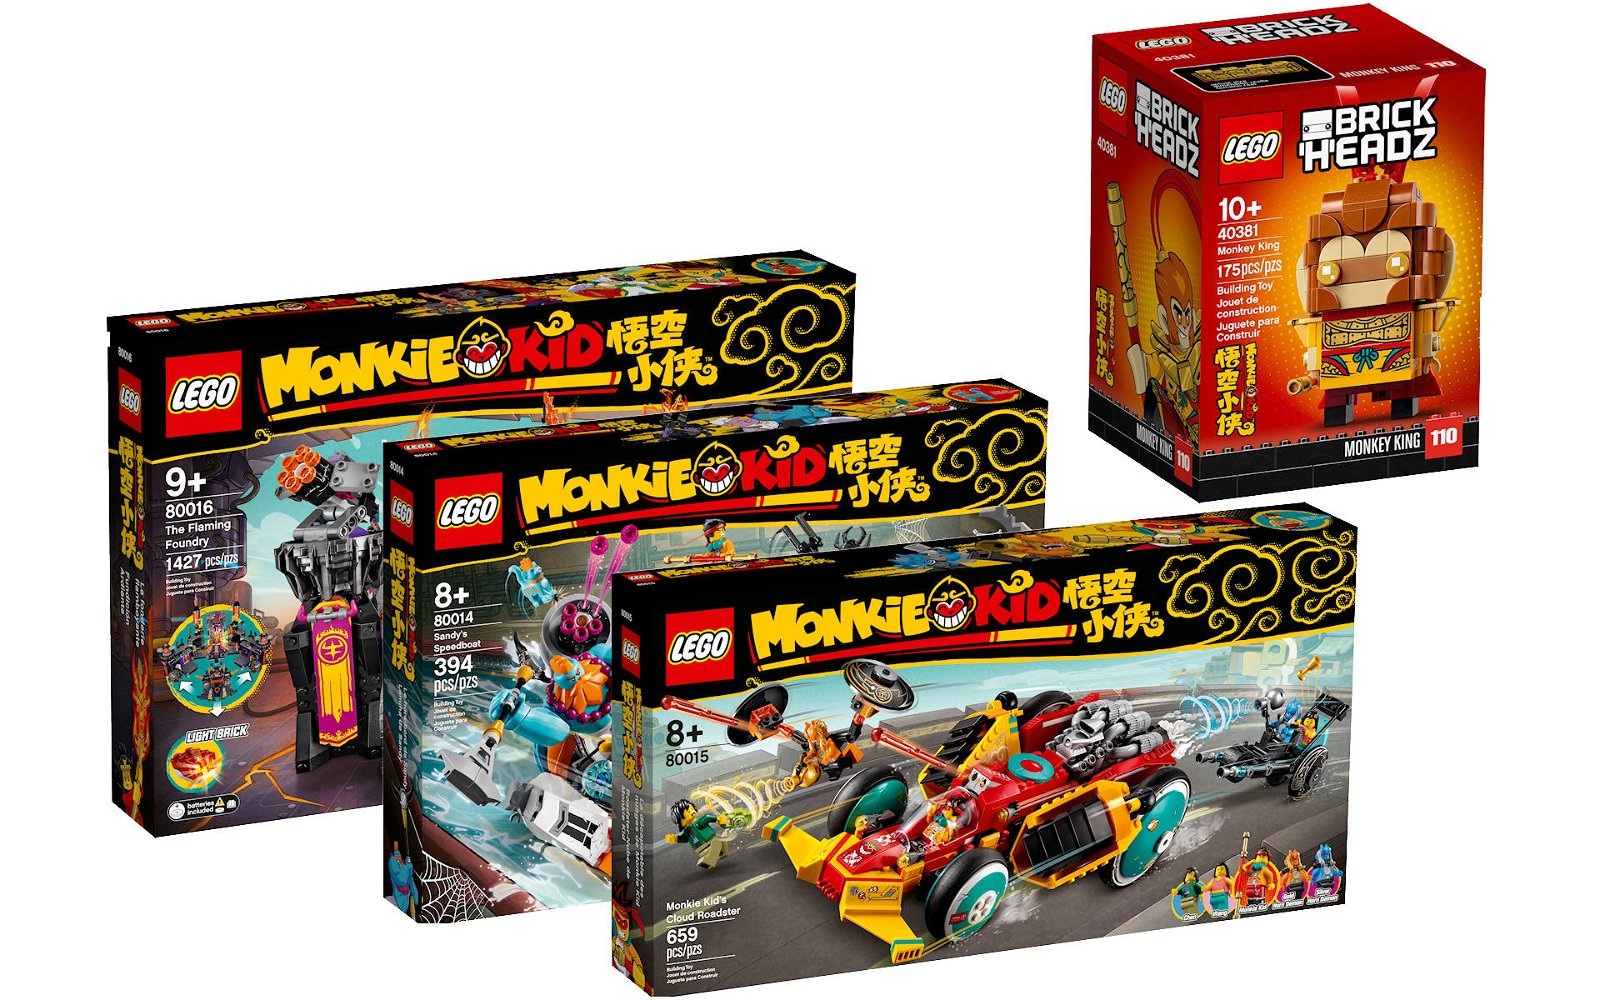 Immagine di LEGO: presentati i nuovi set del tema Monkie Kid